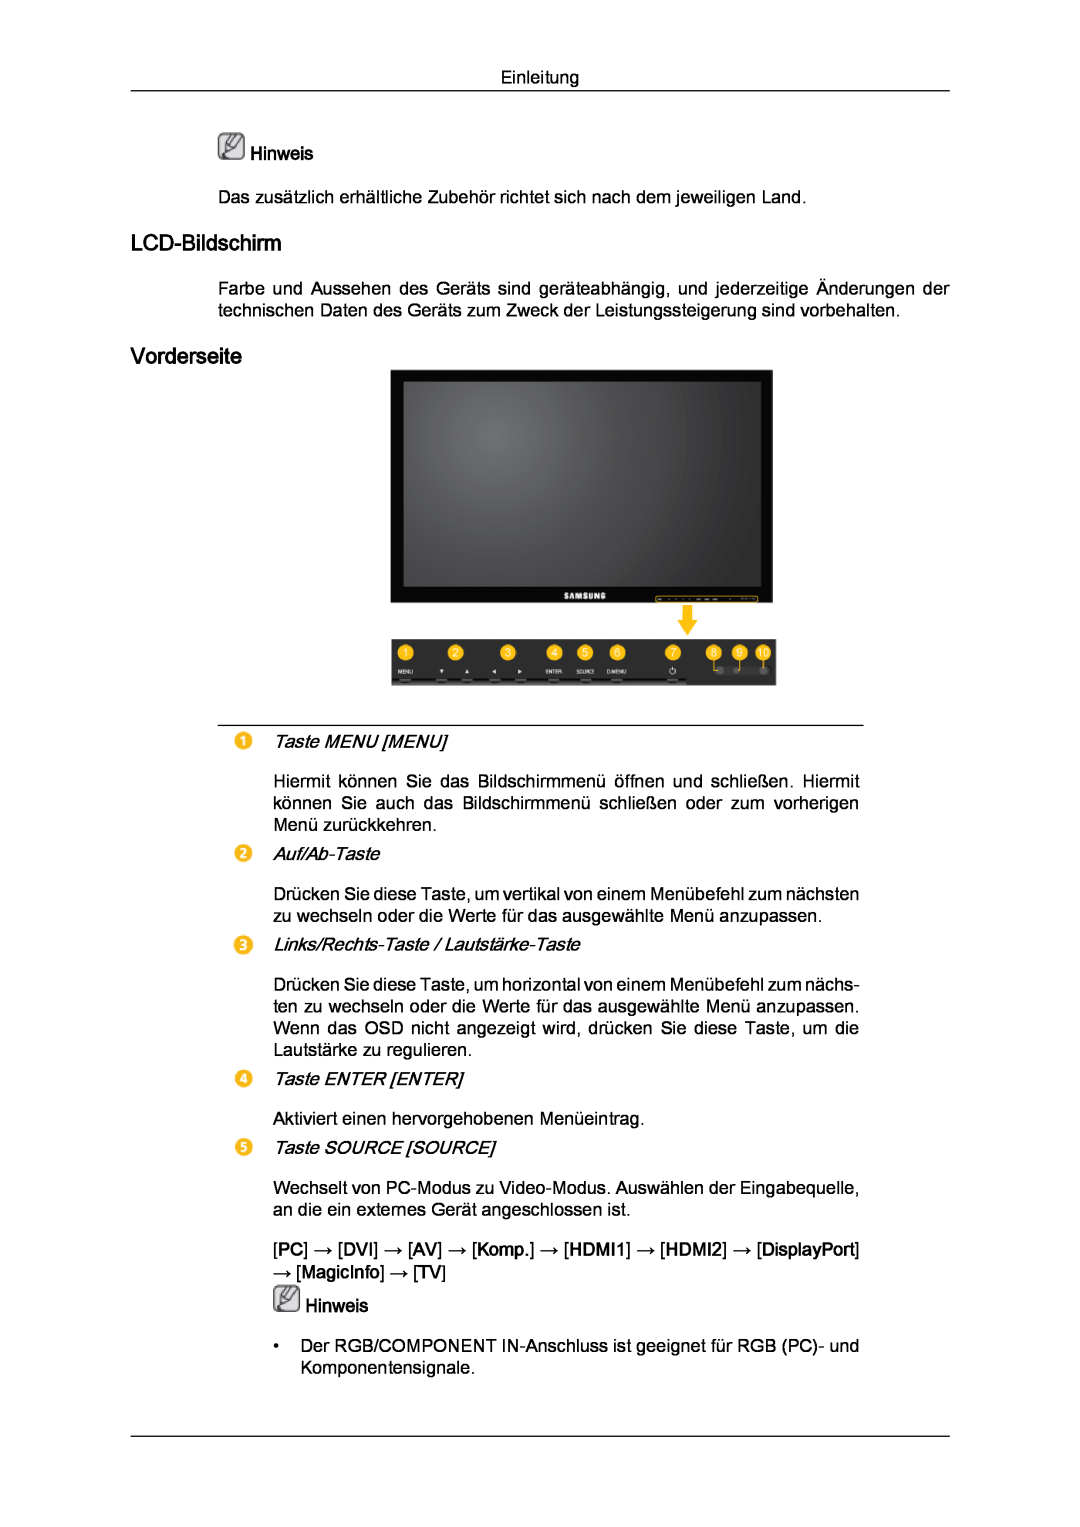 Samsung LH32CRSMBC/EN LCD-Bildschirm, Vorderseite, PC → DVI → AV → Komp. → HDMI1 → HDMI2 → DisplayPort → MagicInfo → TV 